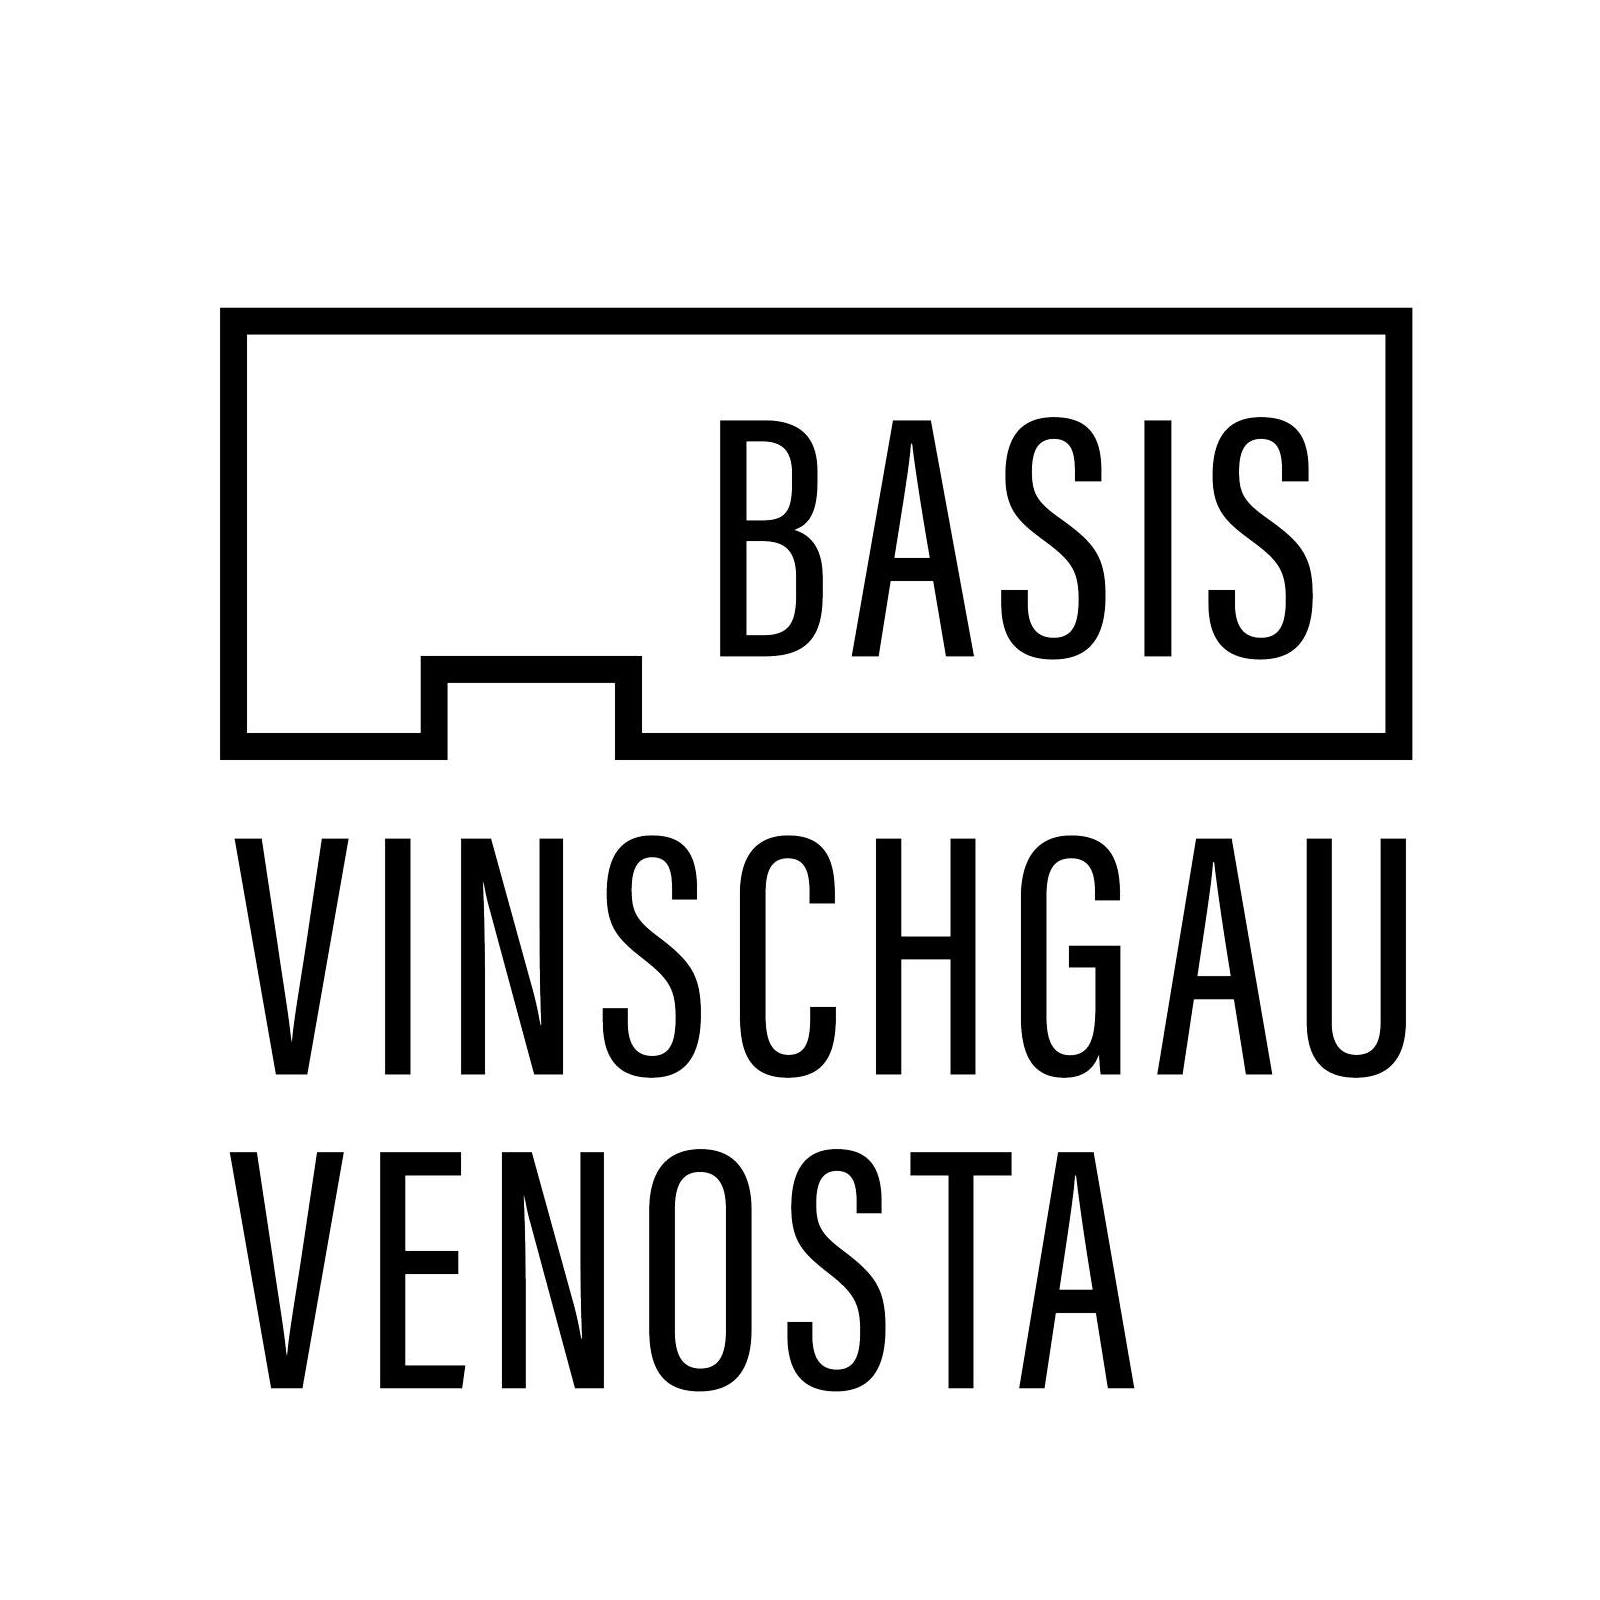 Basis Vinschgau